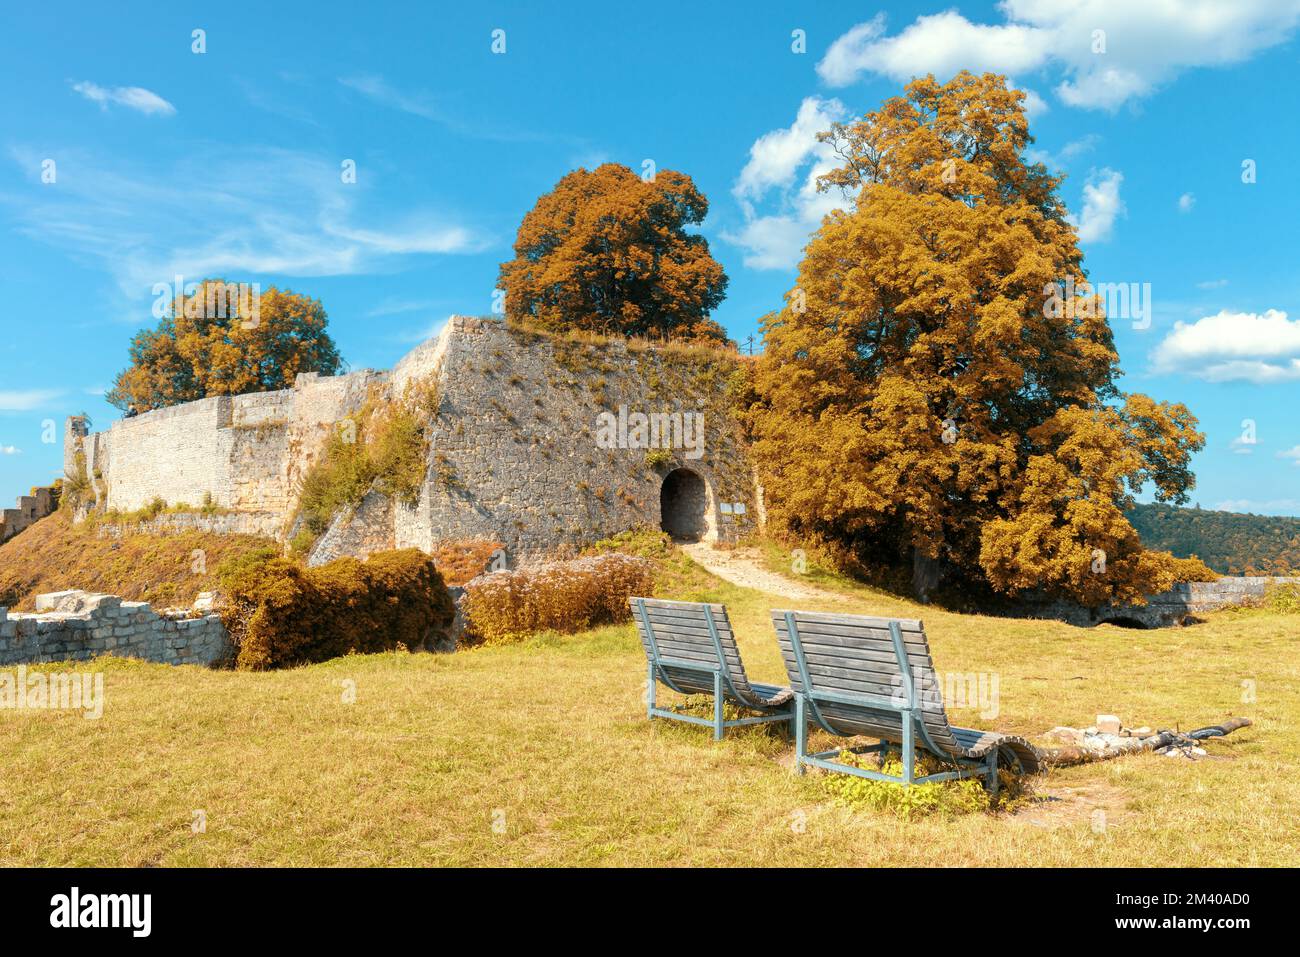 Schloss Hohenurach auf dem Berggipfel im Herbst, Bad Urach, Deutschland. Landschaft mit alten deutschen Burgruinen, die von Efeu überwuchert sind. Blick auf die Festungsmauern in fa Stockfoto